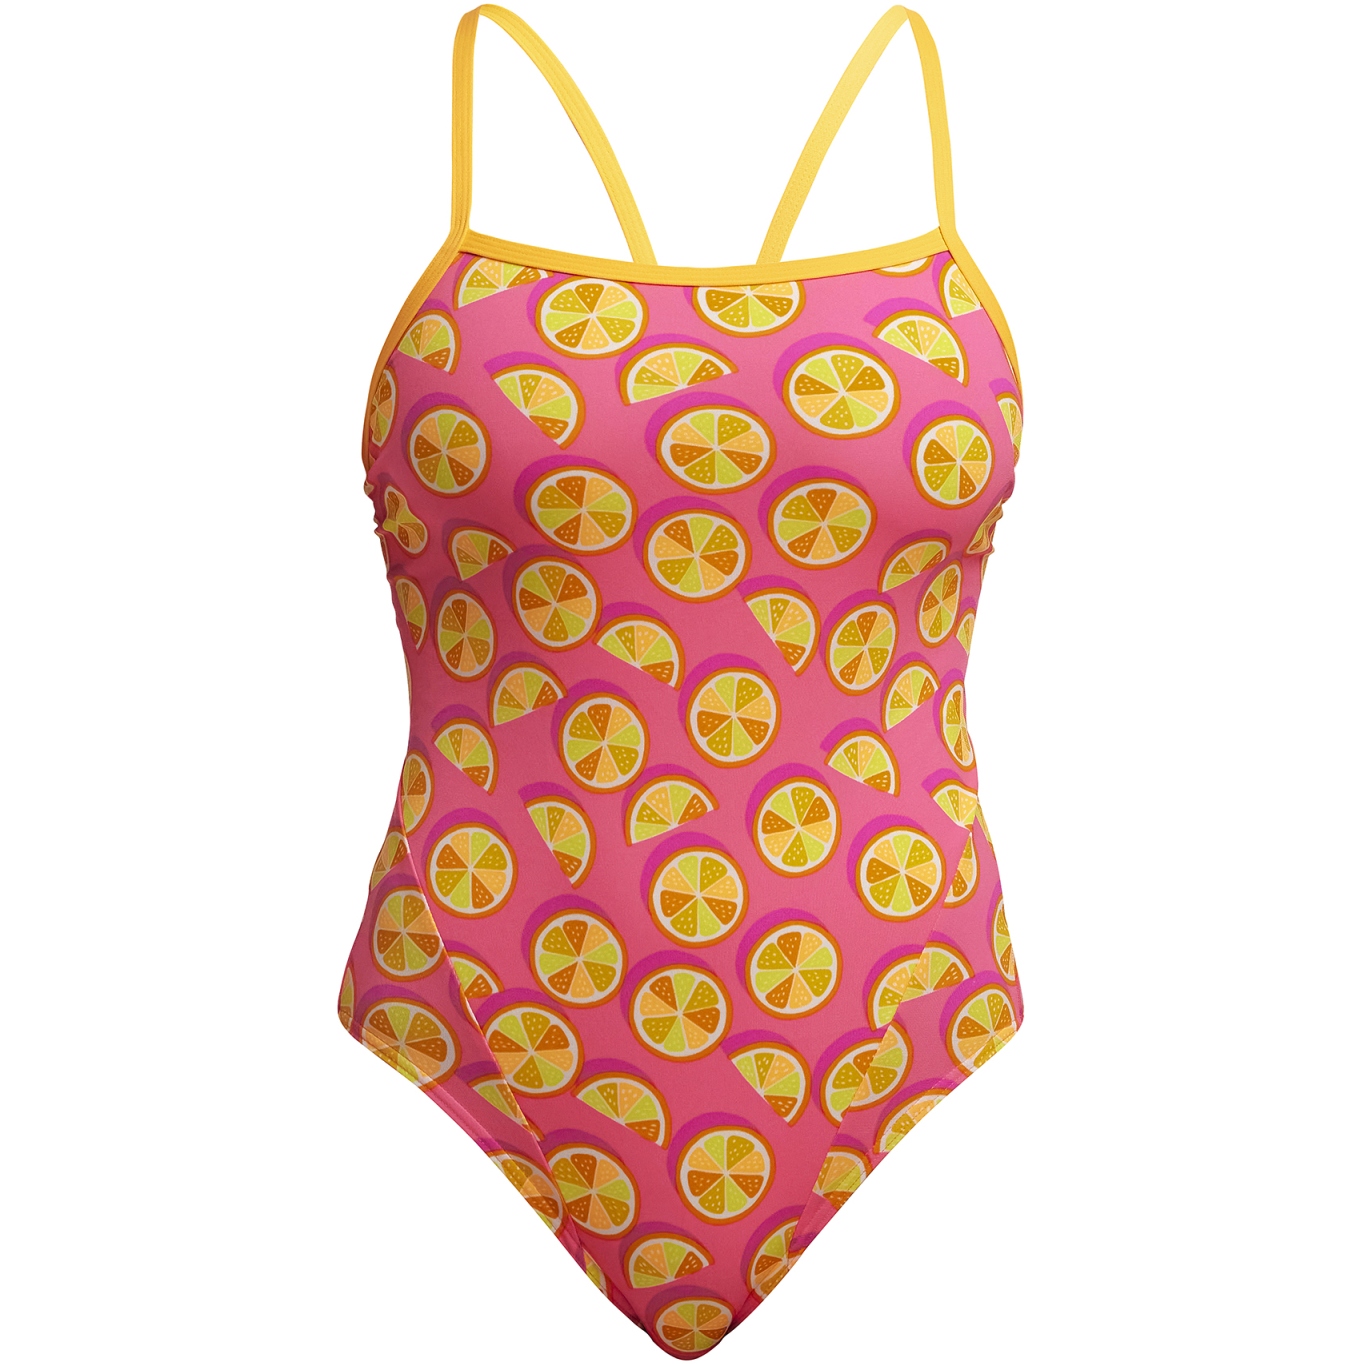 Produktbild von Funkita Single Strap Eco Badeanzug Damen - Mark Spritz